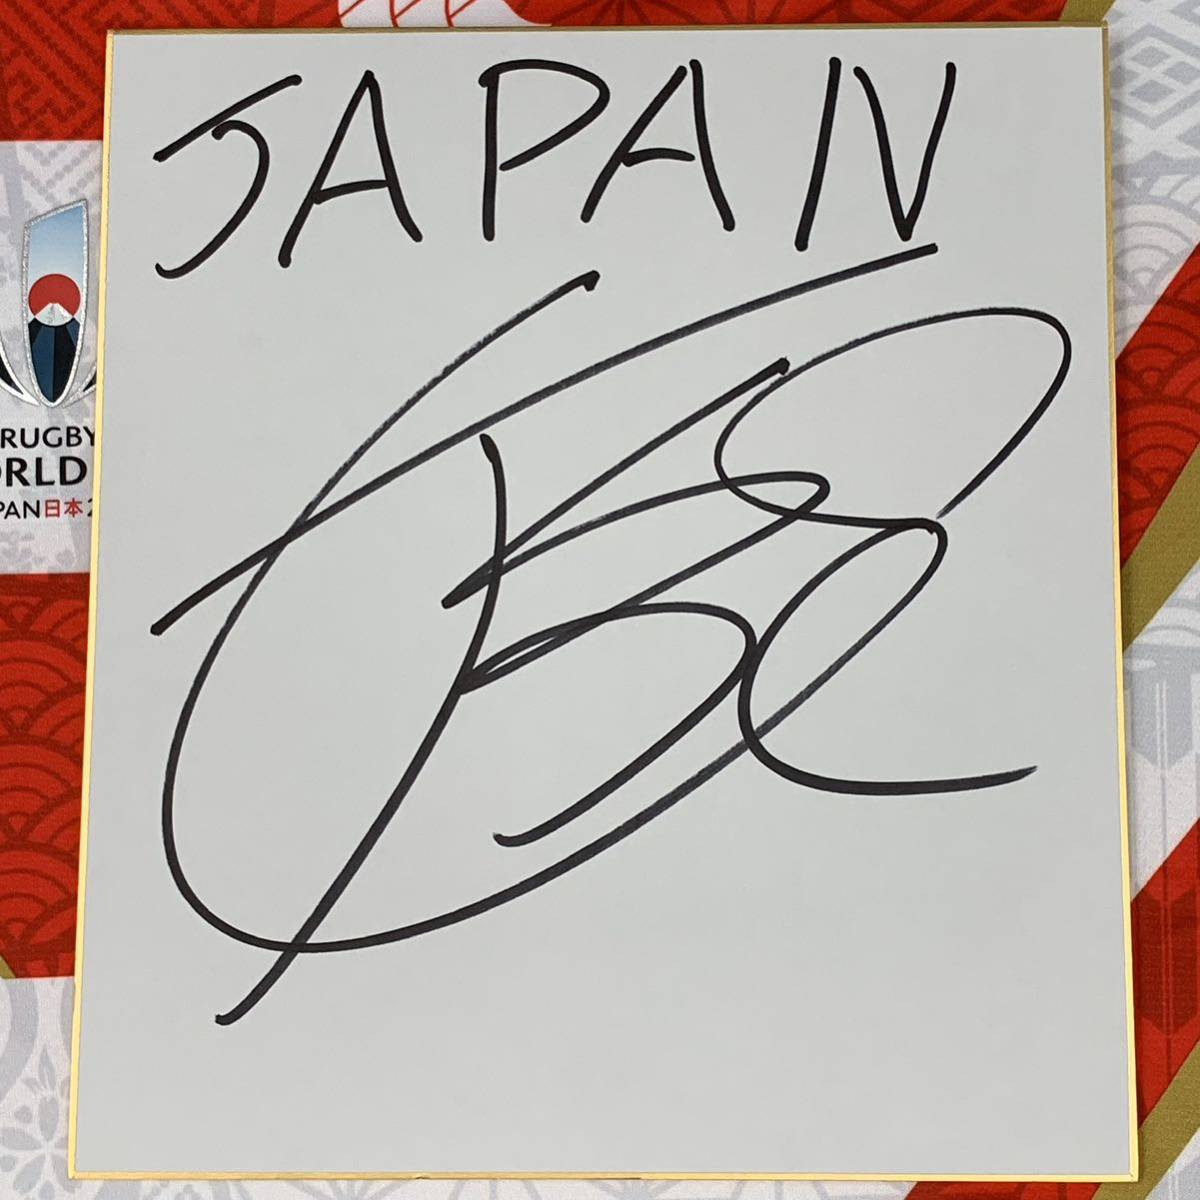 ラグビーワールドカップ2019日本代表 姫野和樹選手のサイン入り色紙 ラグビーワールドカップ2023日本代表